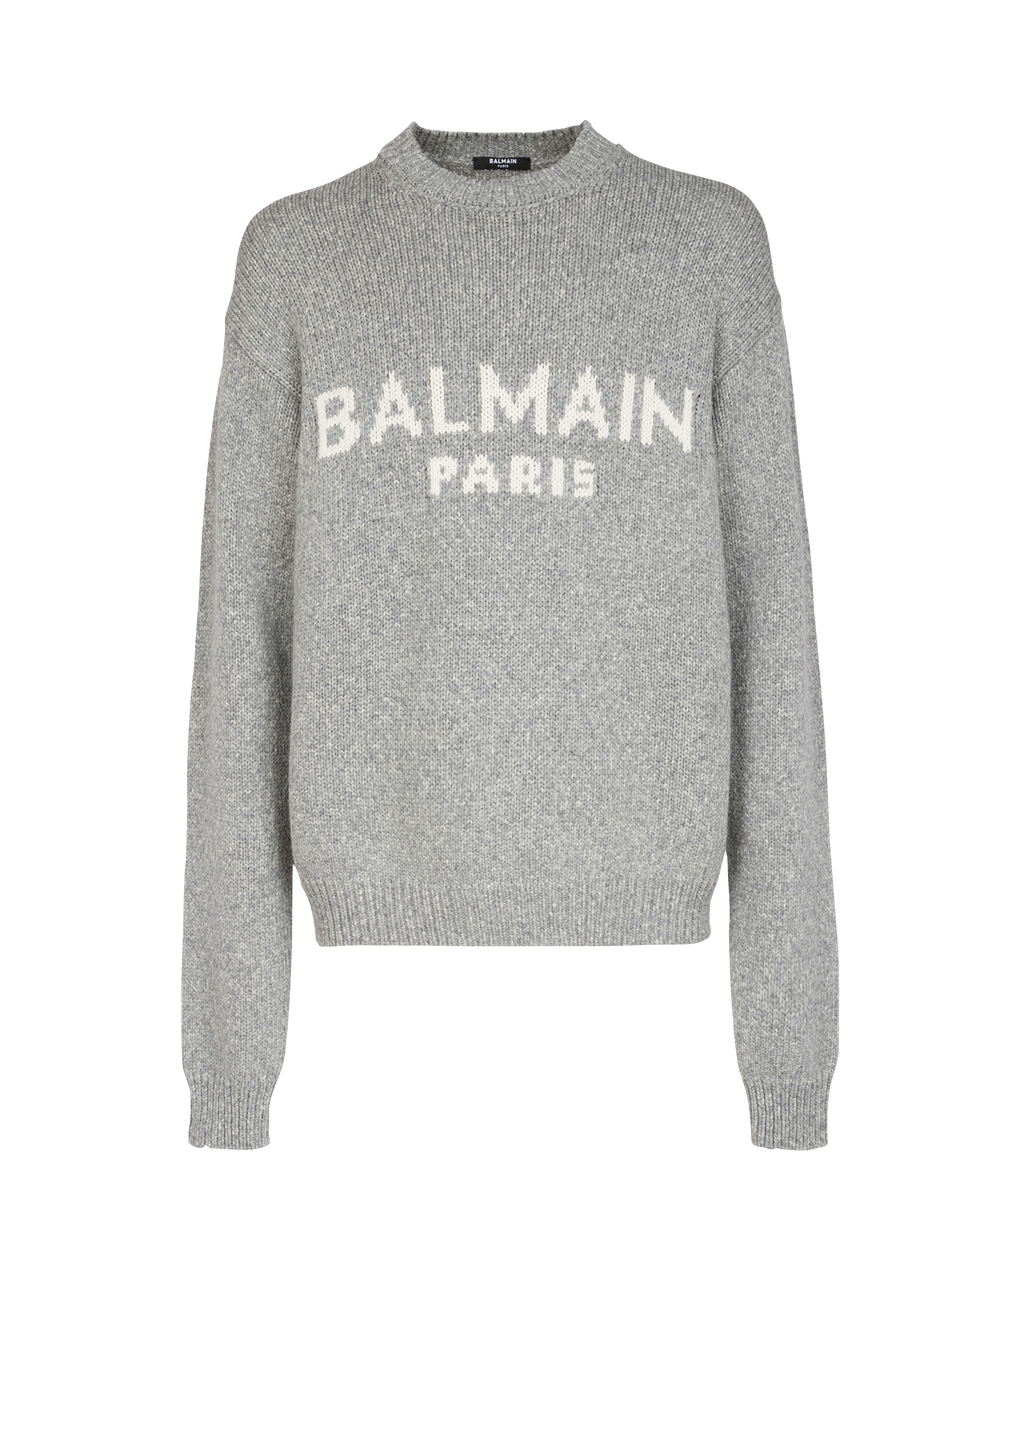 Pull en laine à logo Balmain Paris, gris, hi-res